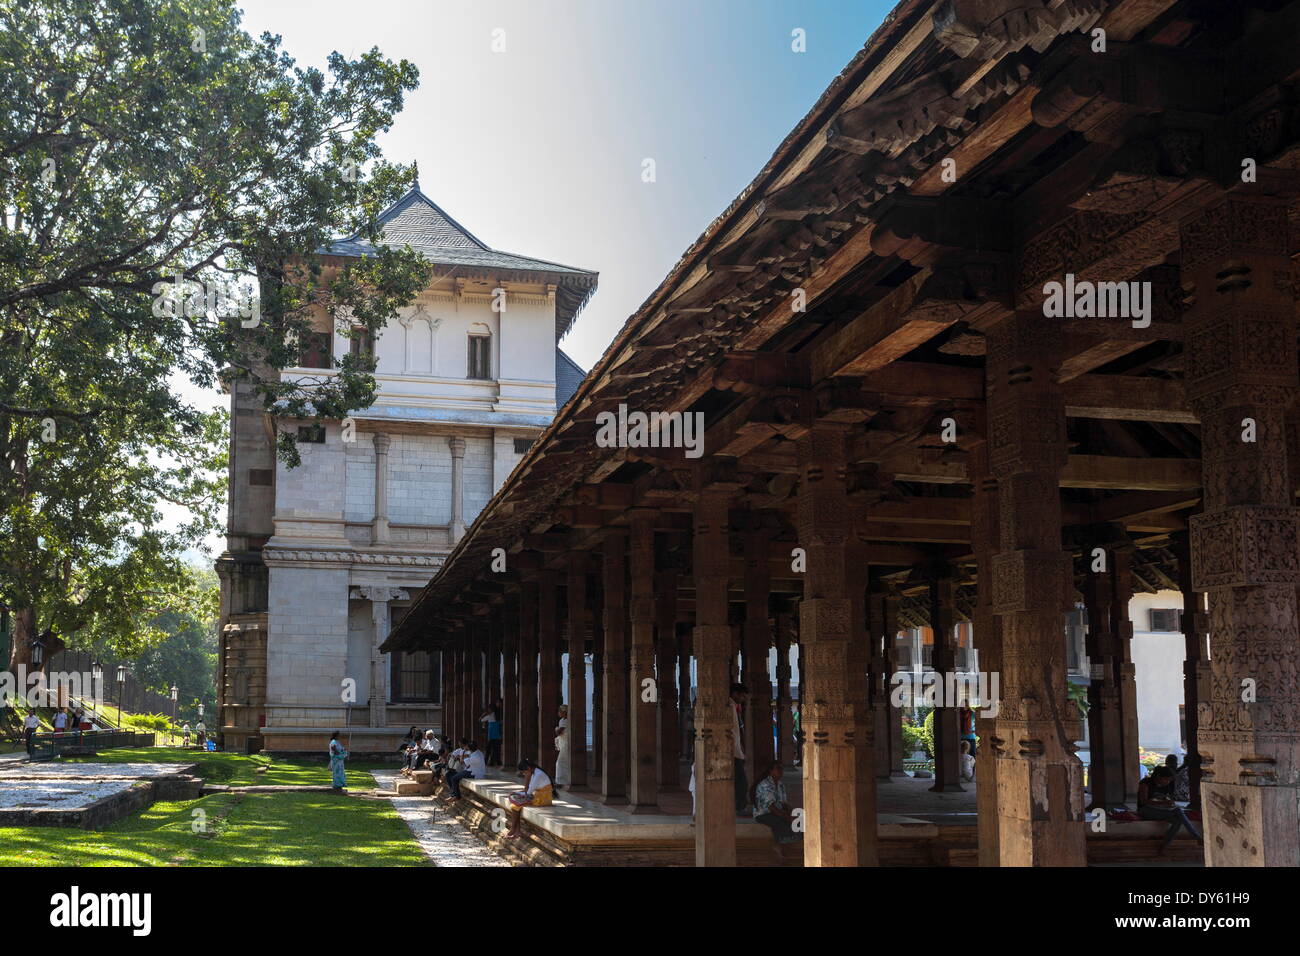 Les colonnes en pierre de l'air libre, d'une salle d'audience, Temple de la Dent Sacrée, Site de l'UNESCO, Kandy, Sri Lanka, Asie Banque D'Images